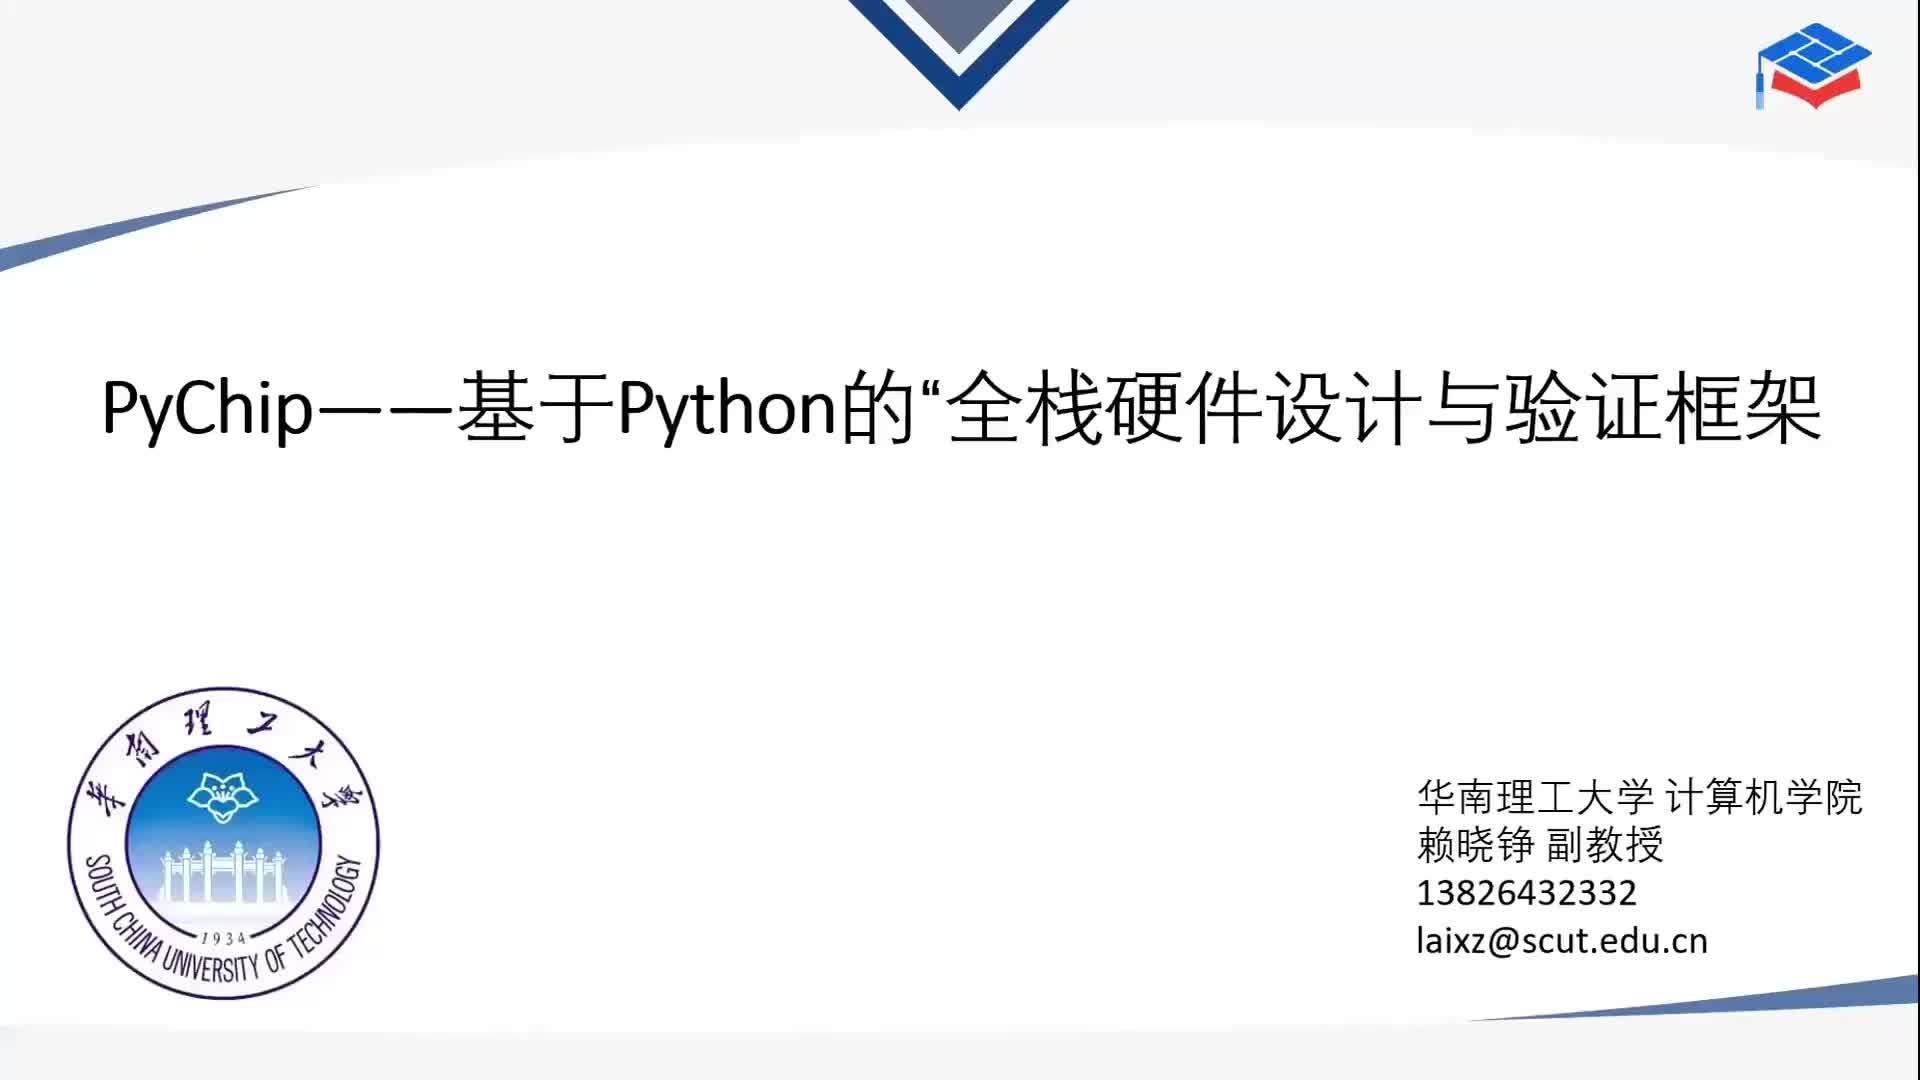 【赖晓铮】PyChip--基于Python的“全栈硬件设计与验证框架 - 第一届 RISC-V 中国峰会1